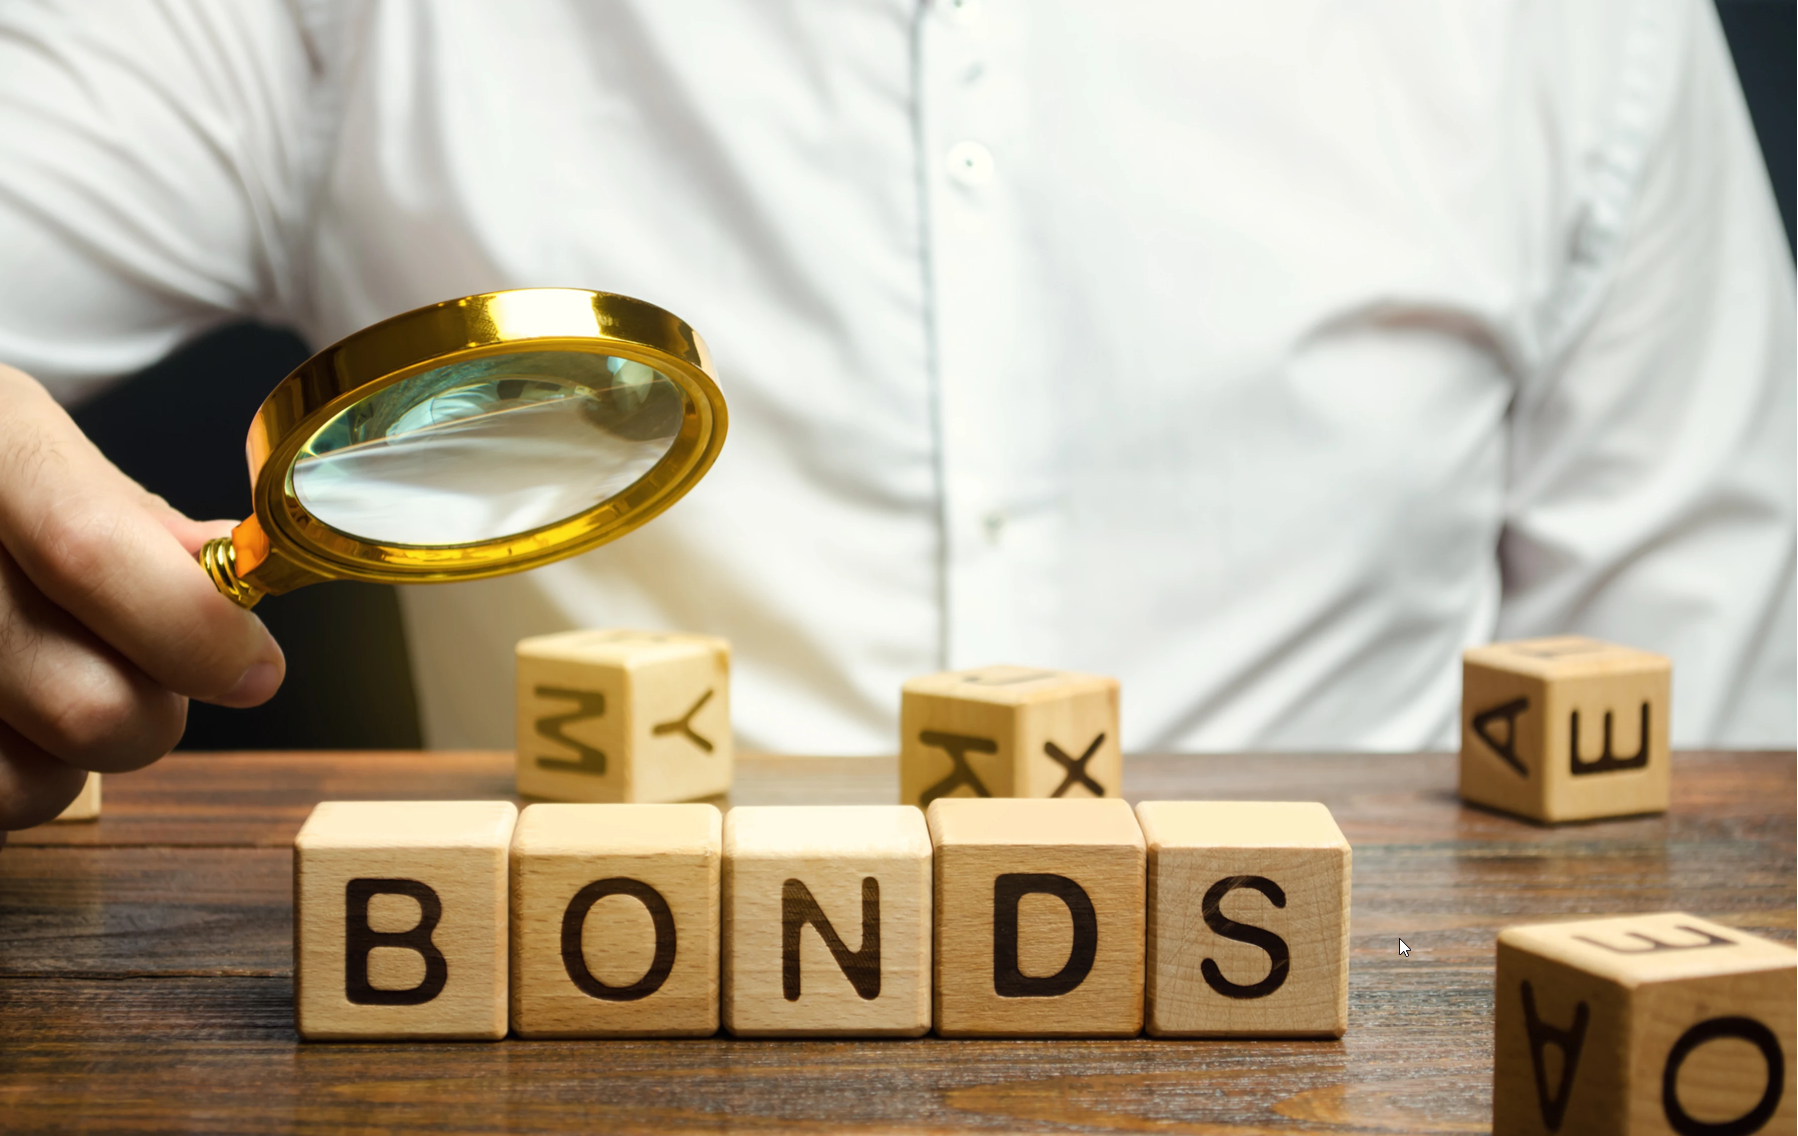 Smart bonds